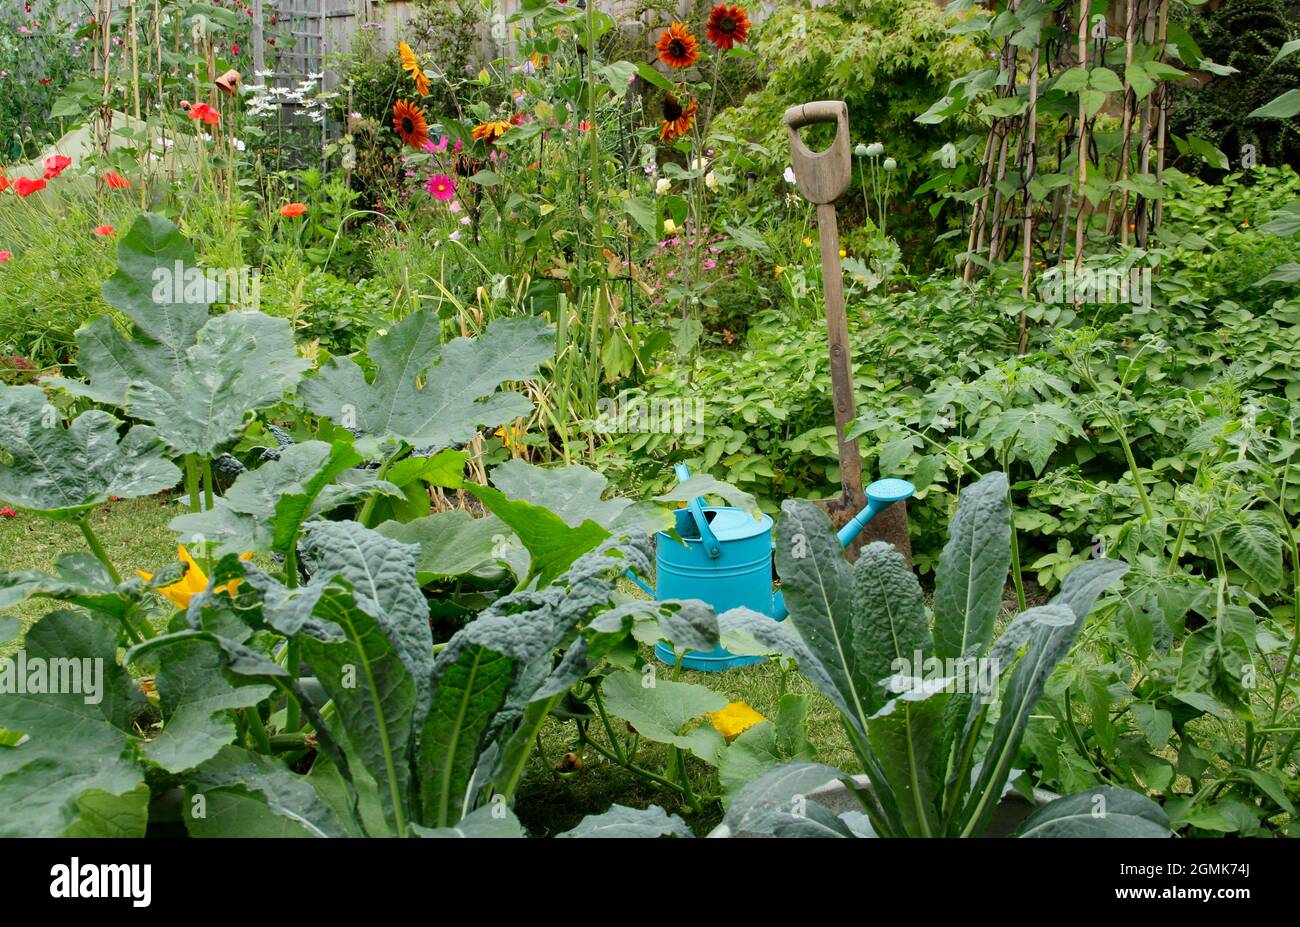 Un jardin potager avec des haricots français, des pommes de terre, du  cavalo nero kale, de l'ail et plus ainsi que des fleurs de pois doux, de  tournesol, de marigold et de